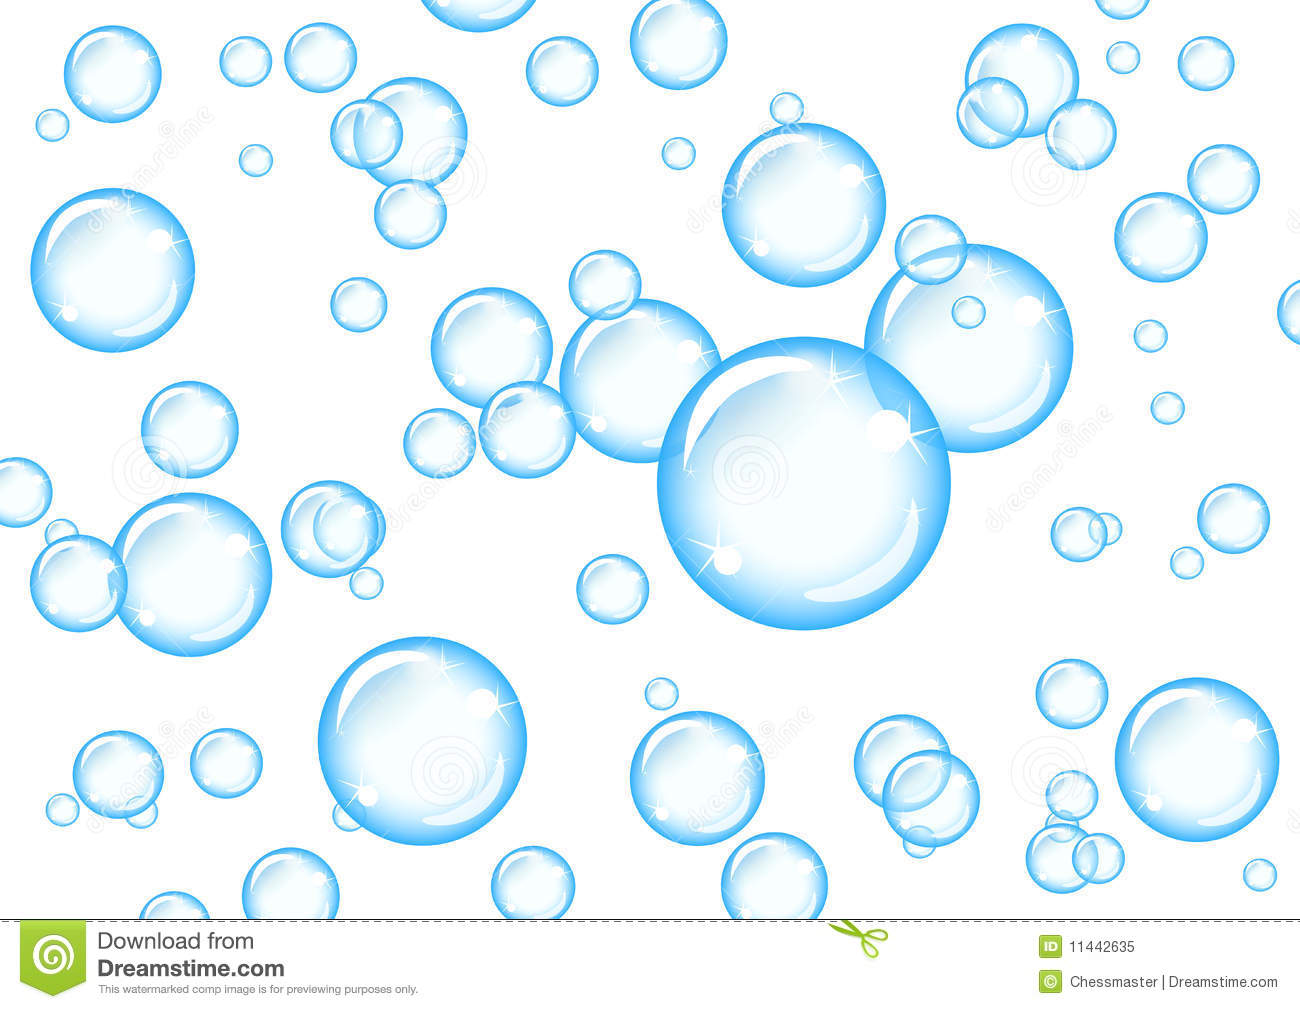 Bubbles Clipart - Clipart Kid